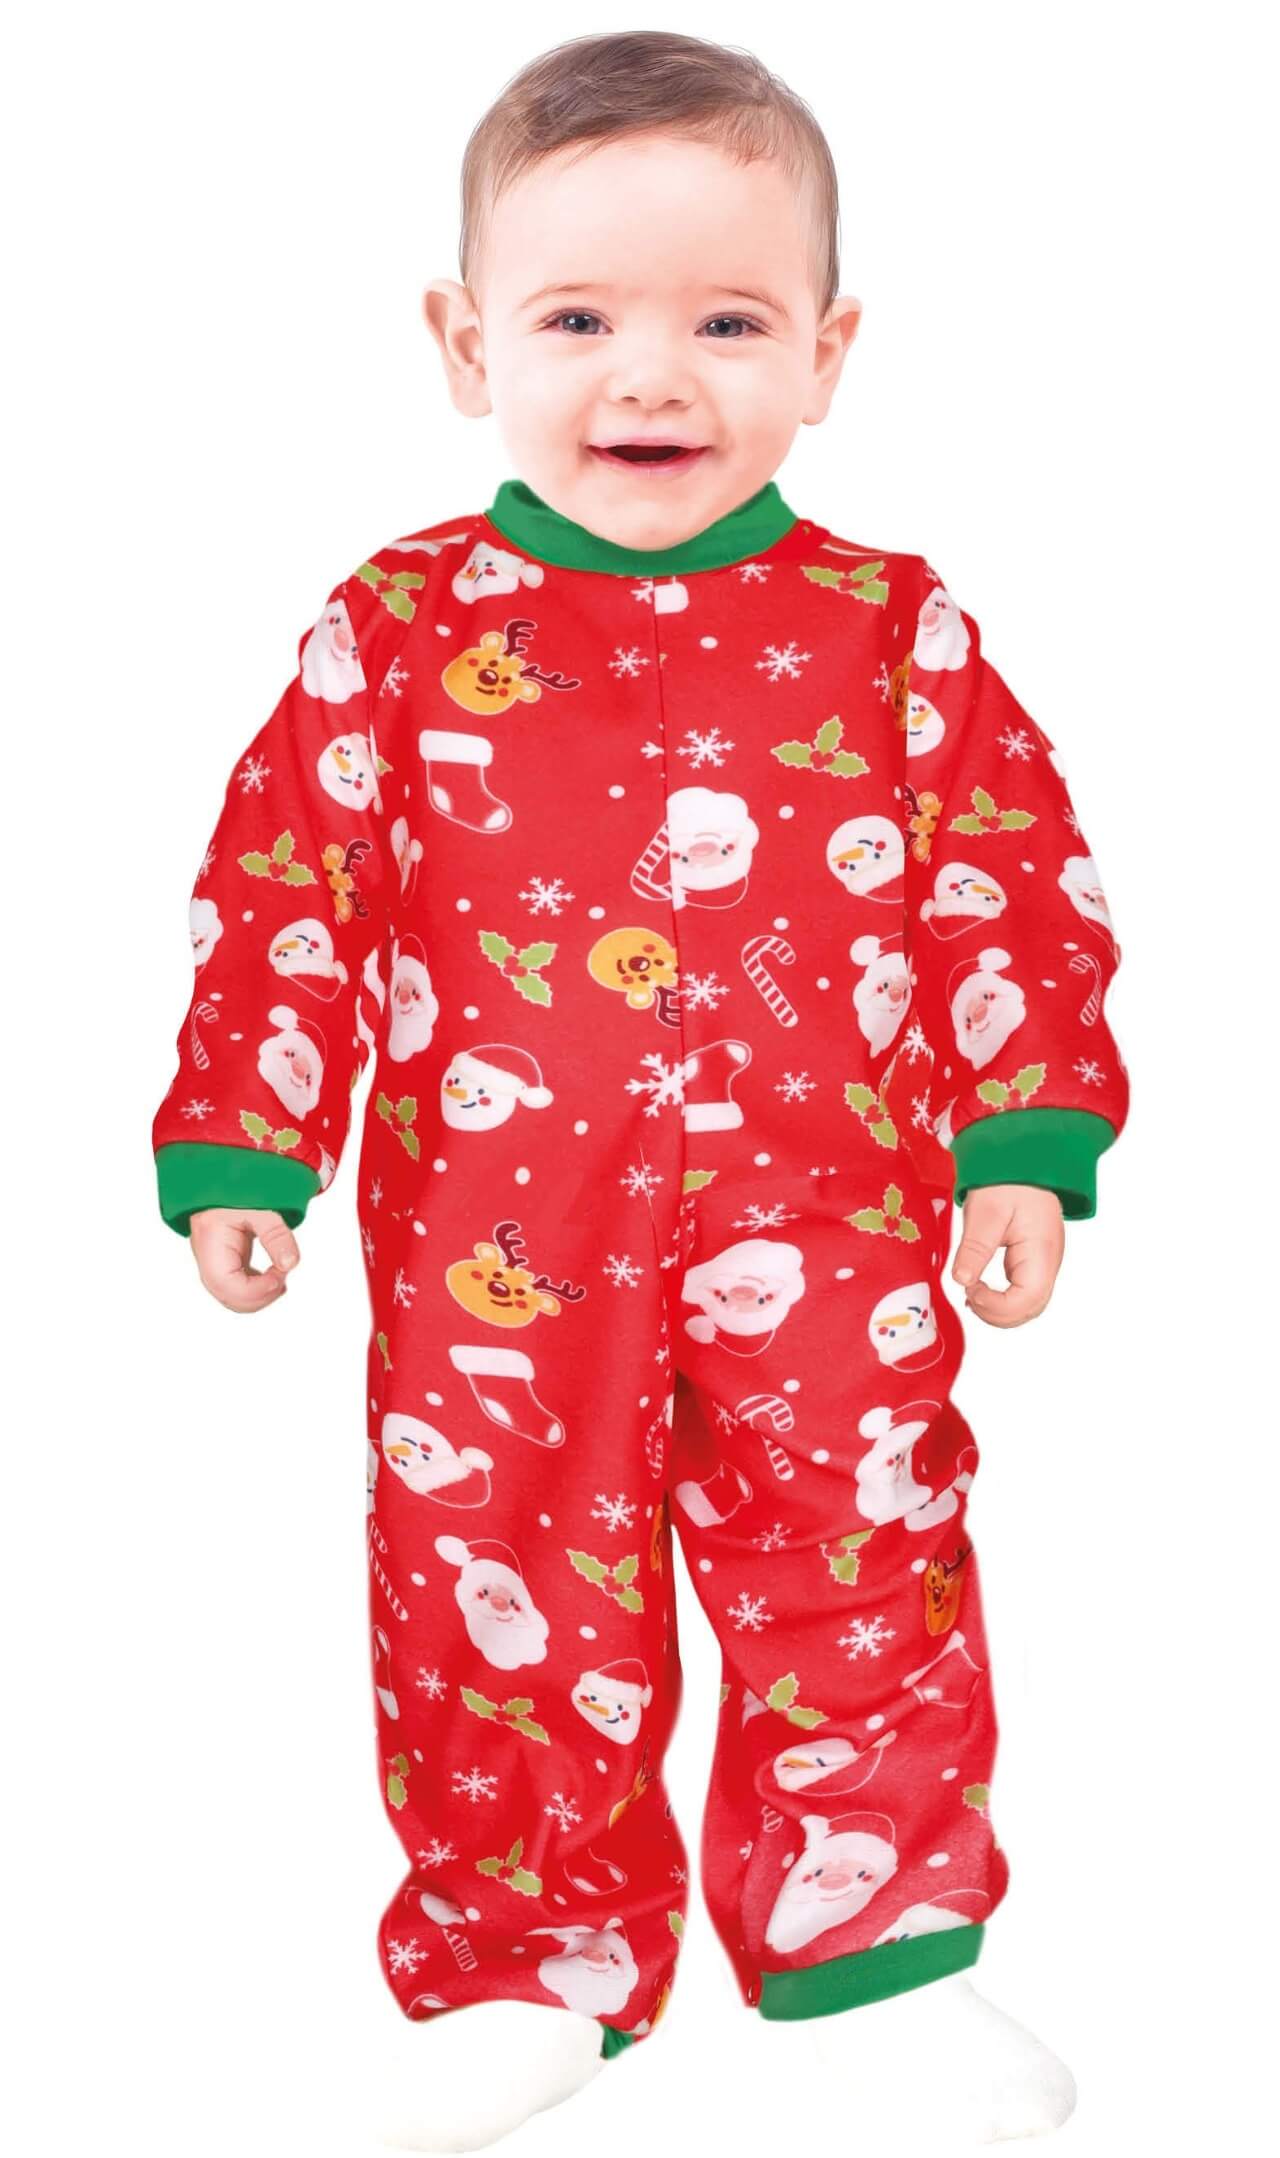 Weihnachtspyjama für Baby